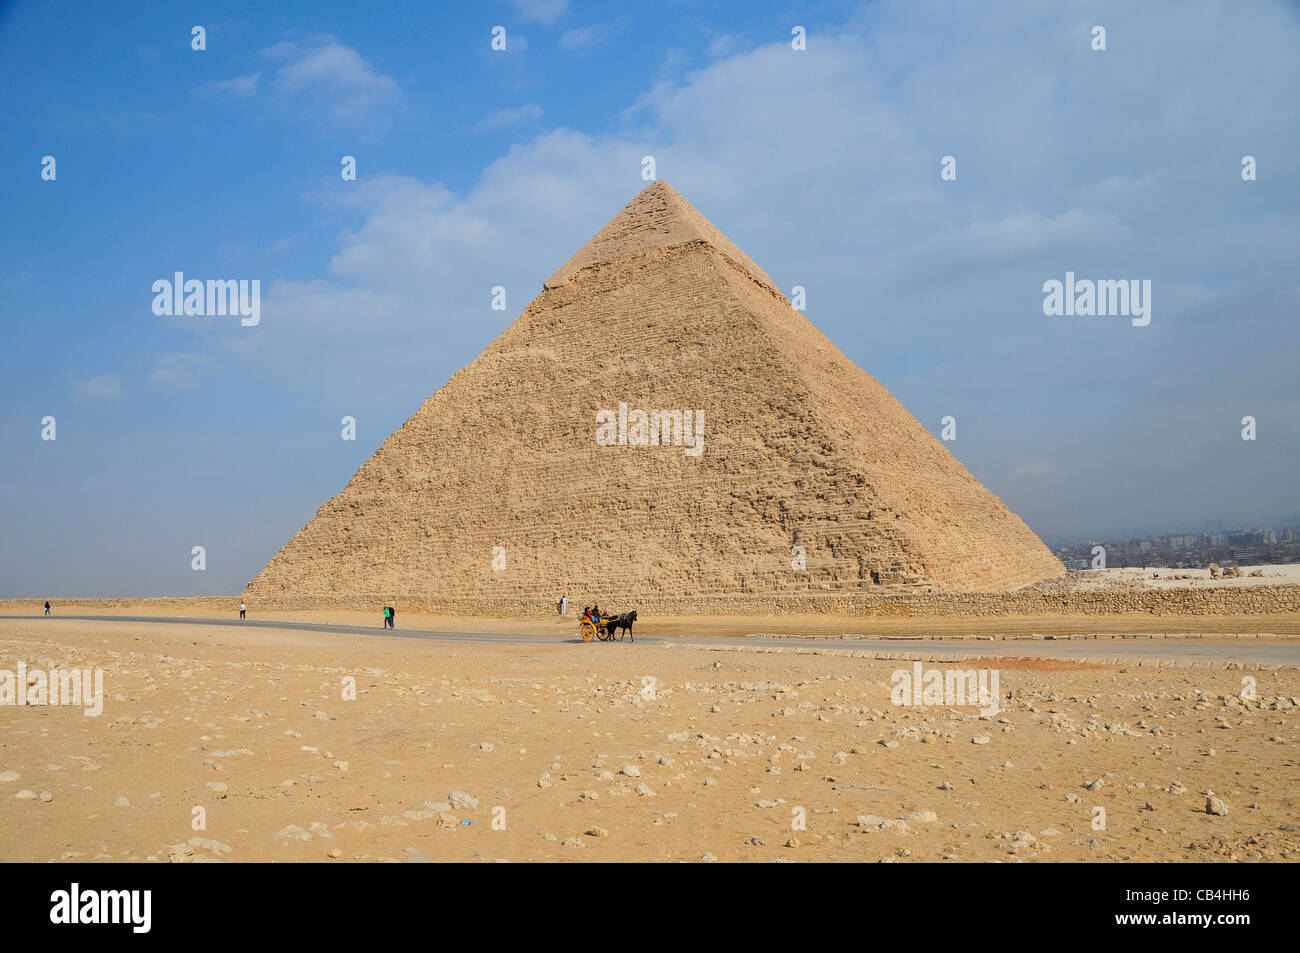 La grande pyramide de Gizeh au Caire, Égypte. Moyen Orient. Banque D'Images